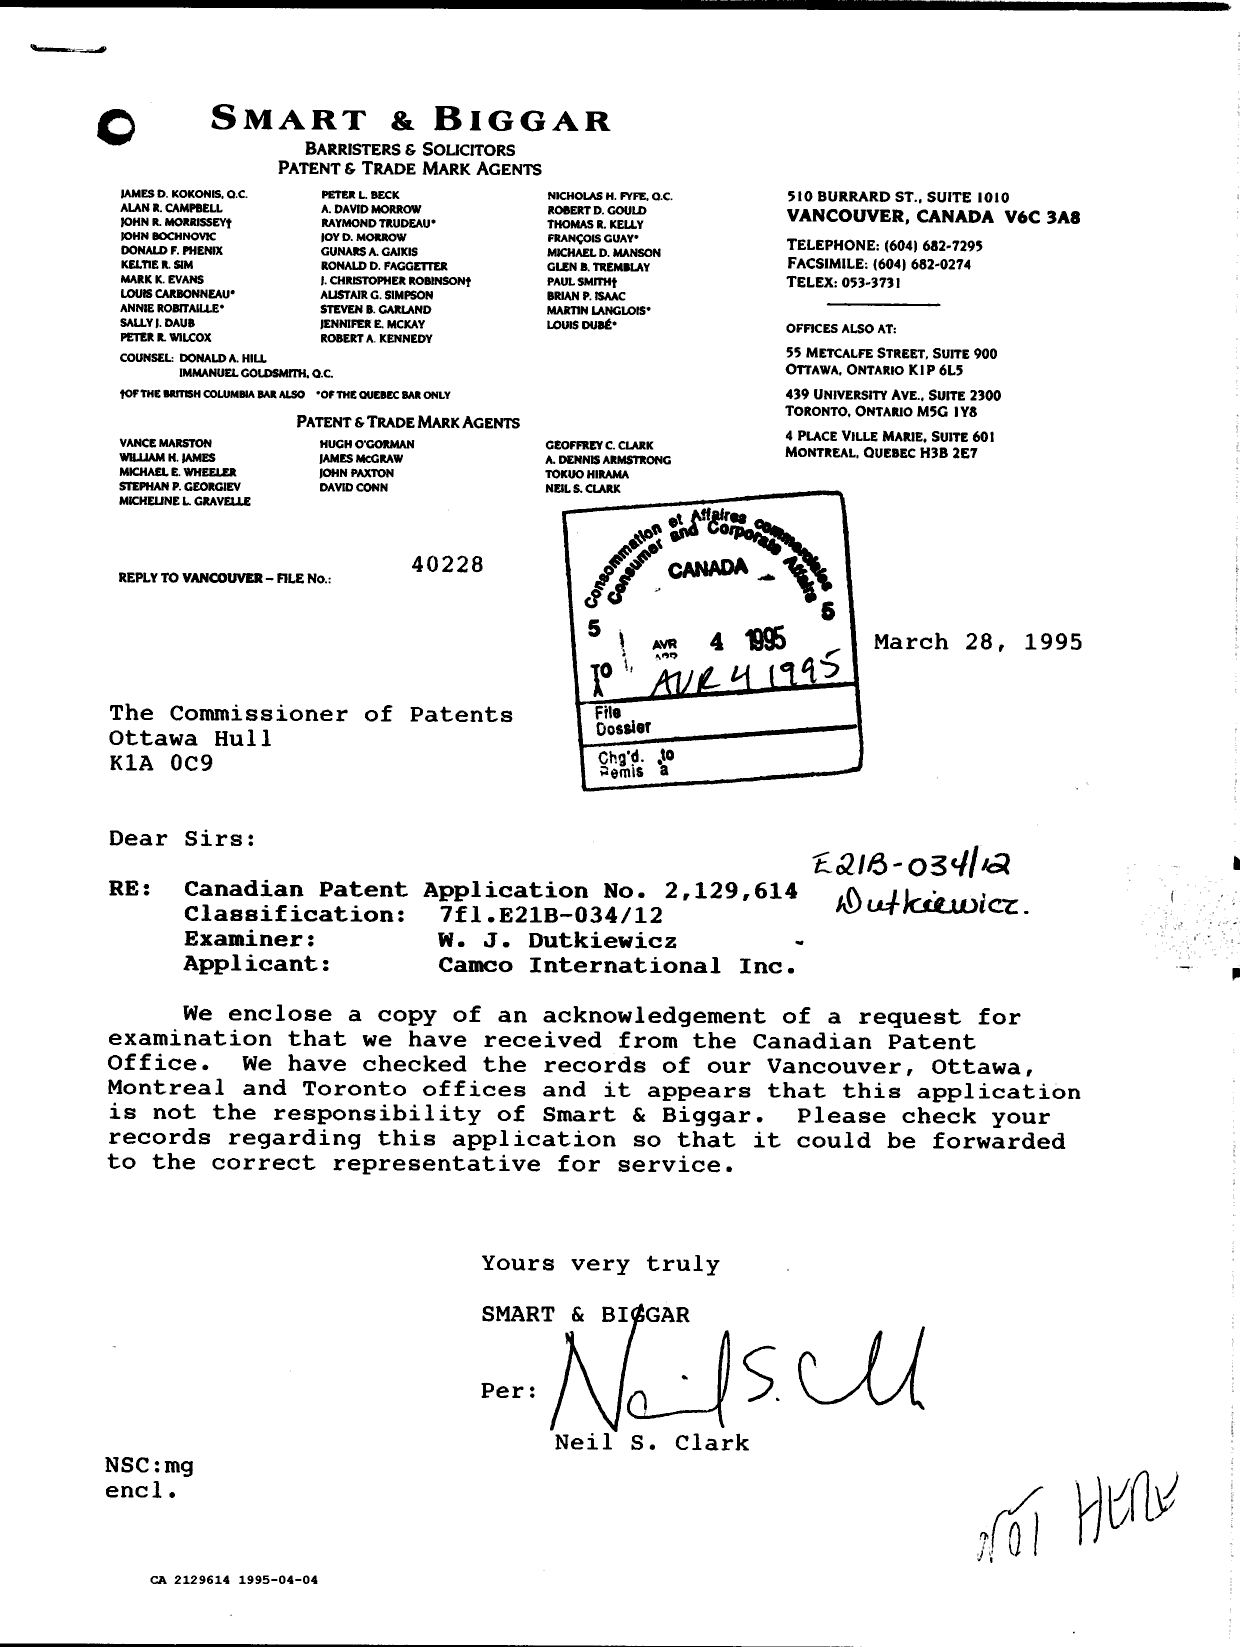 Document de brevet canadien 2129614. Correspondance reliée aux formalités 19950404. Image 1 de 2